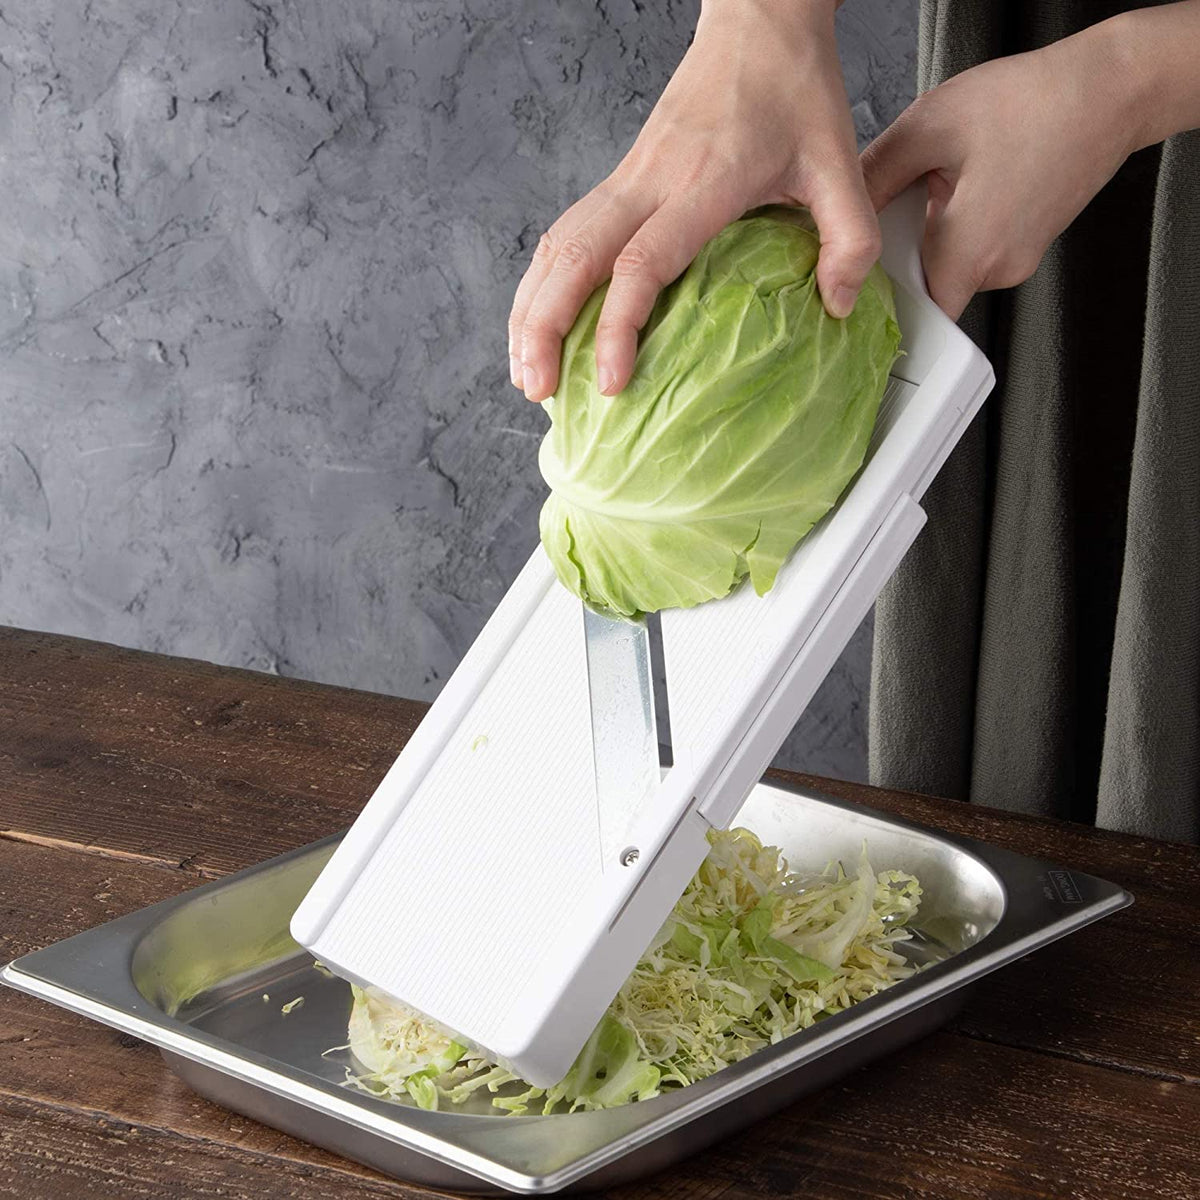 Shimomura Japanese Cabbage Shredder Handheld Vegetable Slicer 27915